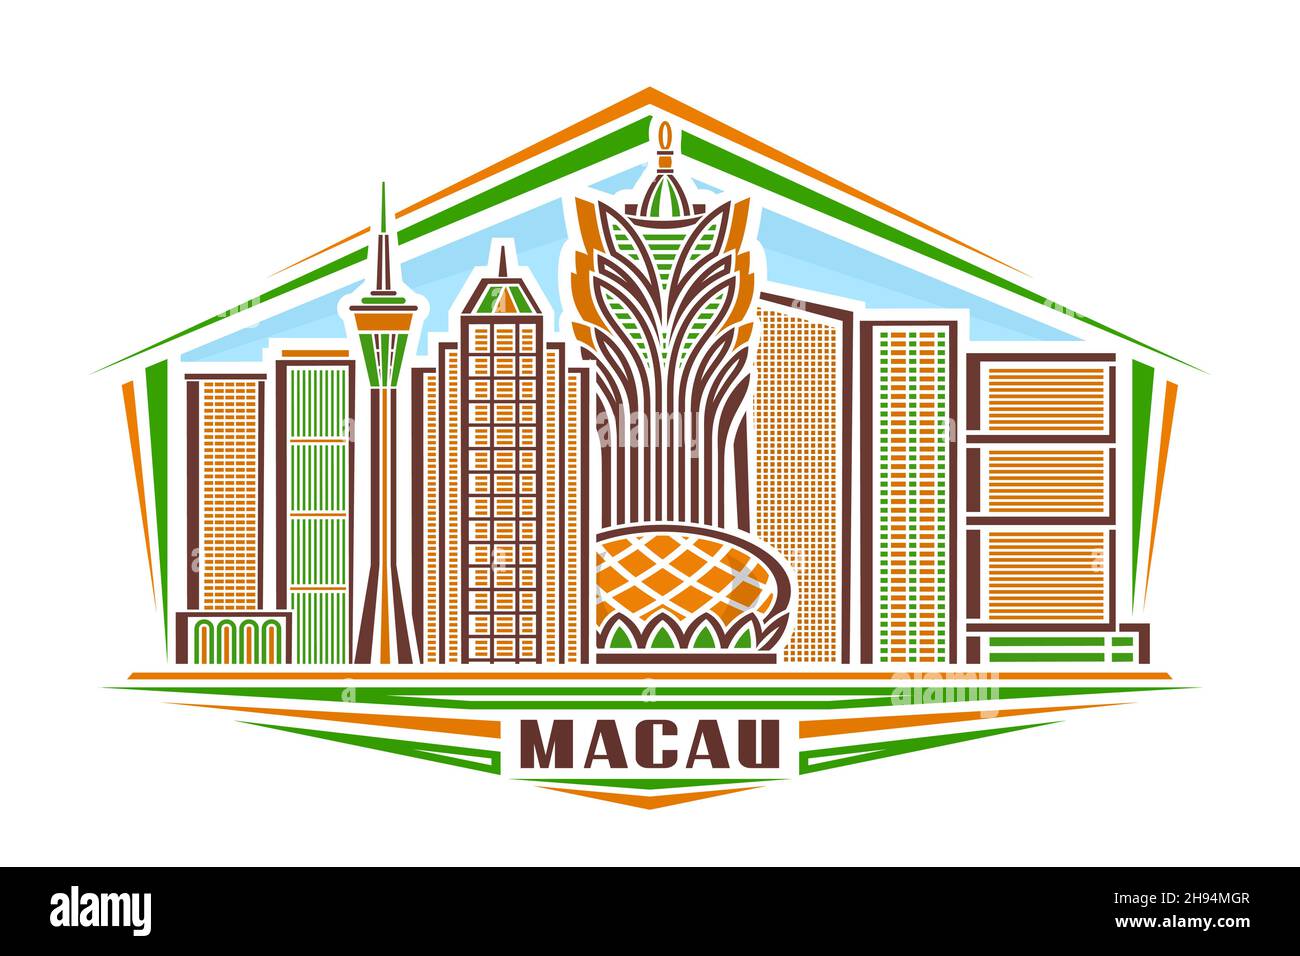 Illustration vectorielle de Macao, logo horizontal avec design linéaire célèbre paysage de la ville de macao sur fond de ciel de jour, concept d'art urbain asiatique avec déco Illustration de Vecteur